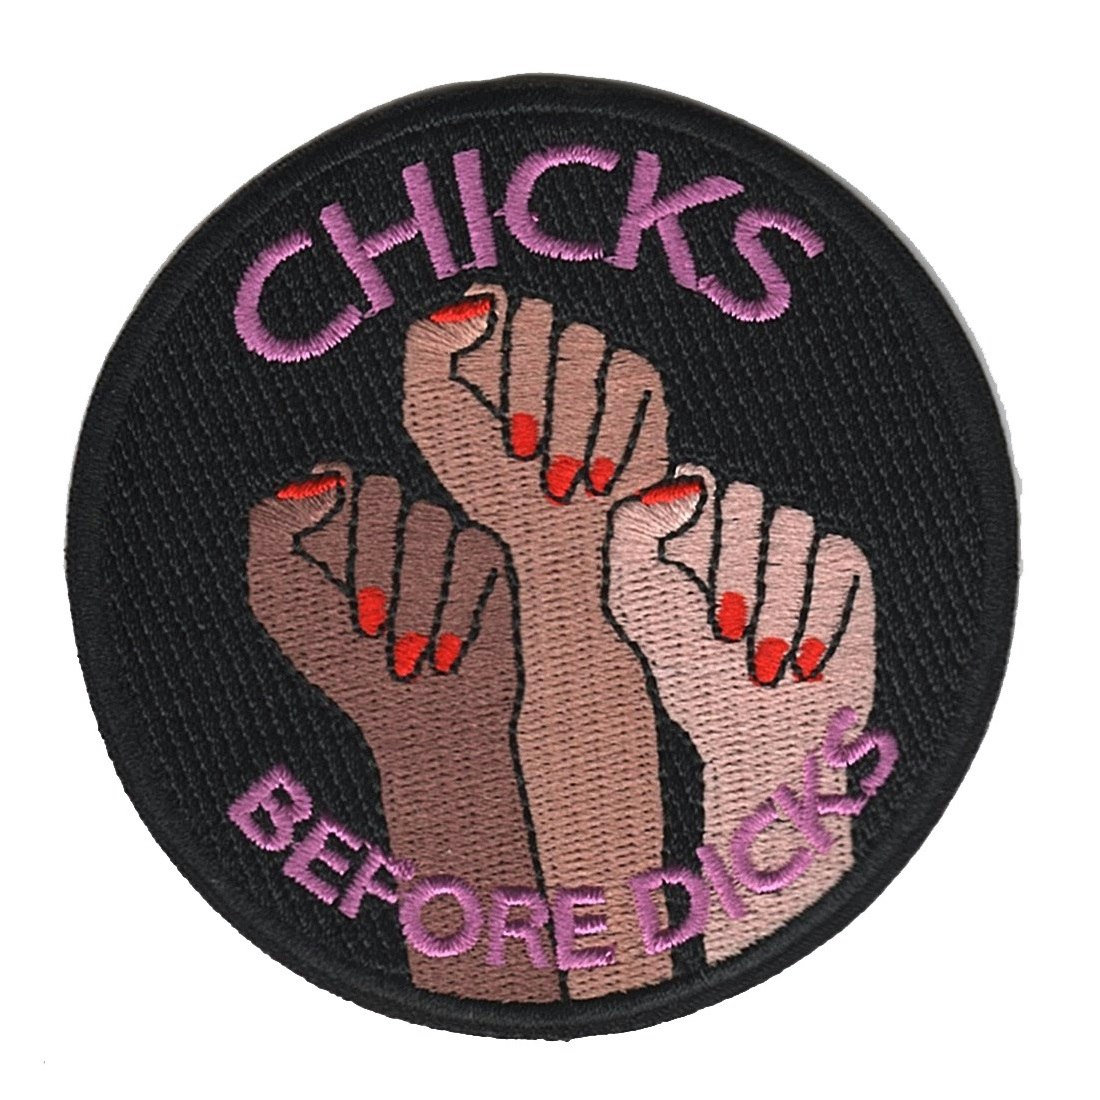 Chicks before dicks